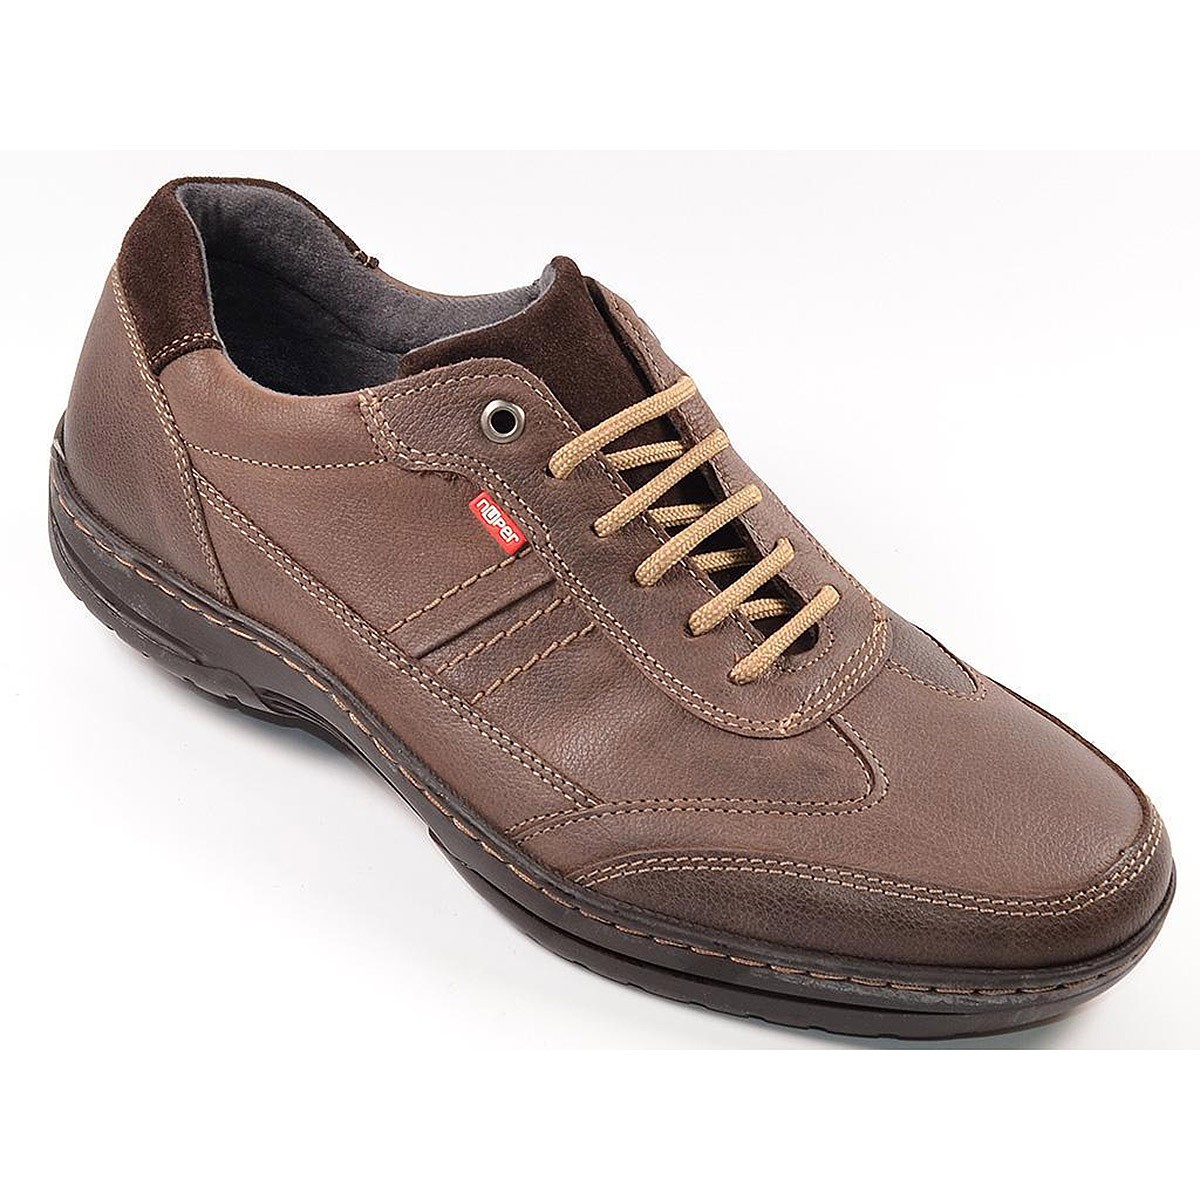 5782 Nuper Zapato Comprar Zapato sport fabricado con piel engrasada. Forro textil y plantilla extraible mermory. Cordones ajusta